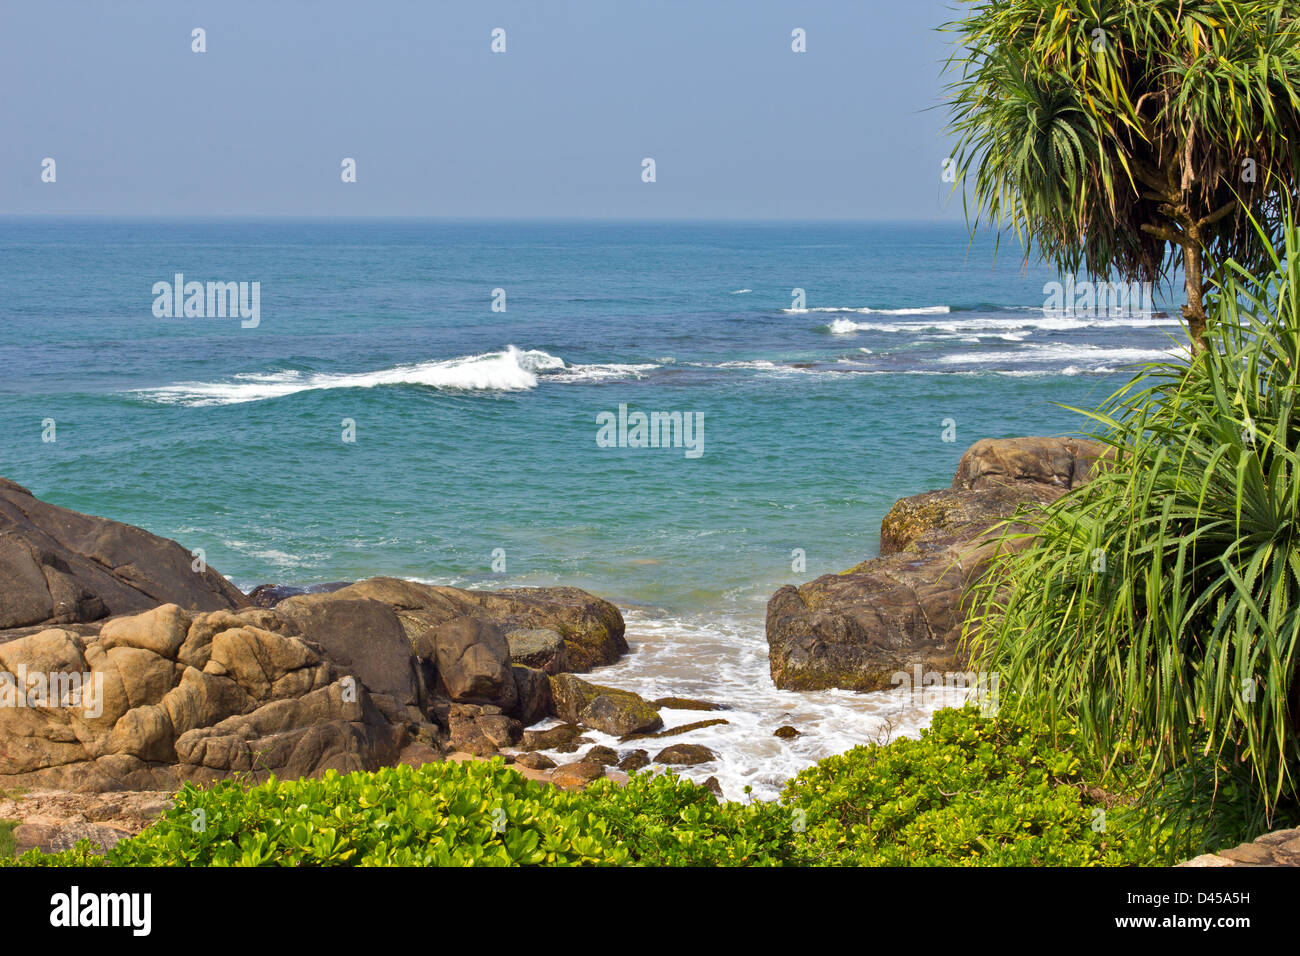 Mar y las rocas de playa tropical en el sur de Sri Lanka con flora típica Foto de stock